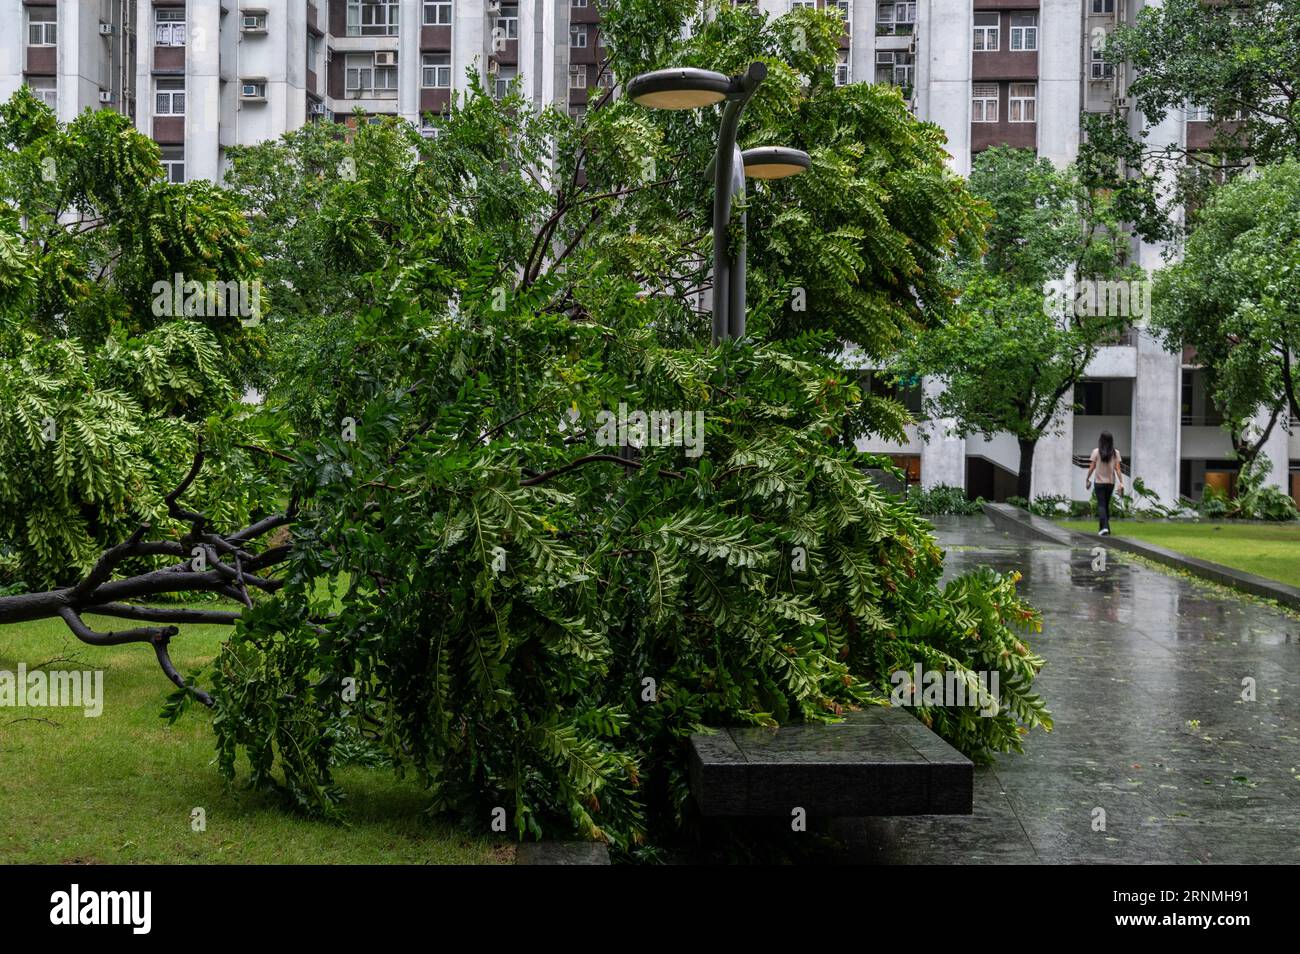 Hongkong, Hongkong. September 2023. Ein Bewohner befragt umgestürzte Bäume in Taikoo Shing, während der Taifun durch das Gebiet weht. Der Super Typhoon Saola hat Hongkong getroffen und viele umgestürzte Bäume, zerrissene Schilder und beschädigte Gebäude hinterlassen. Das Hong Kong Observatory hisste das Nummer 10 Typhoon Signal, die höchste Warnstufe, die zuletzt 2018 für den Taifun Mangkhut ausgegeben wurde. Glücklicherweise wurden nur wenige Verletzungen und keine Todesfälle verzeichnet, wobei die Aufräumarbeiten beginnen, wenn der Sturm das Gebiet verlässt. Quelle: SOPA Images Limited/Alamy Live News Stockfoto